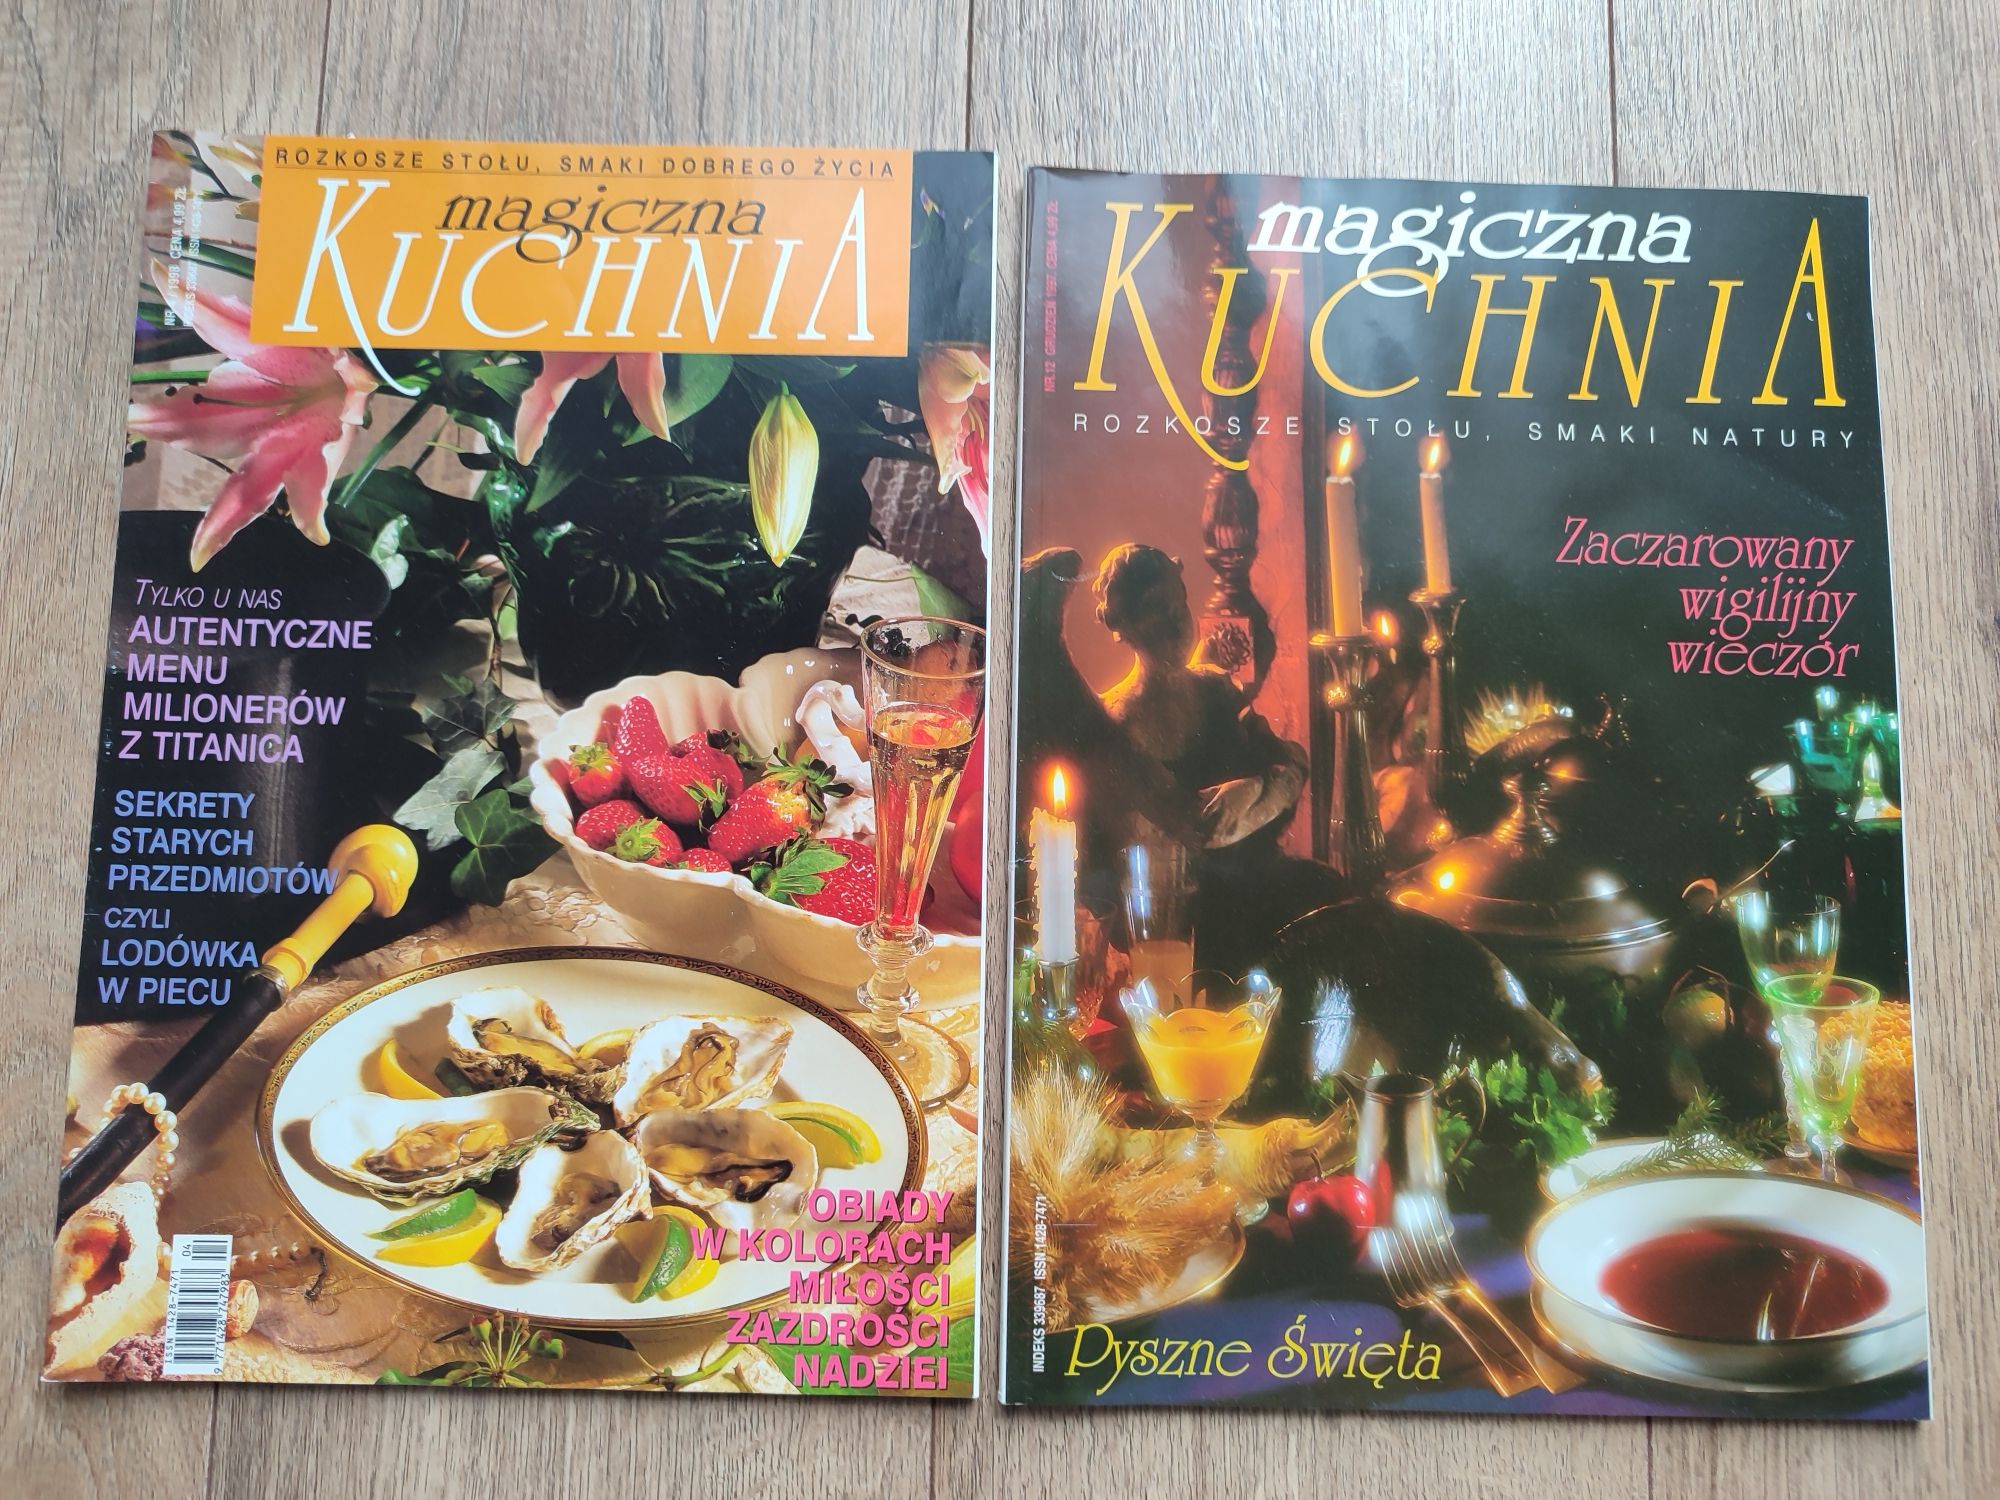 Magiczna kuchnia nr 4/1998, nr 12/1998 Rozkosze stołu, smaki natury